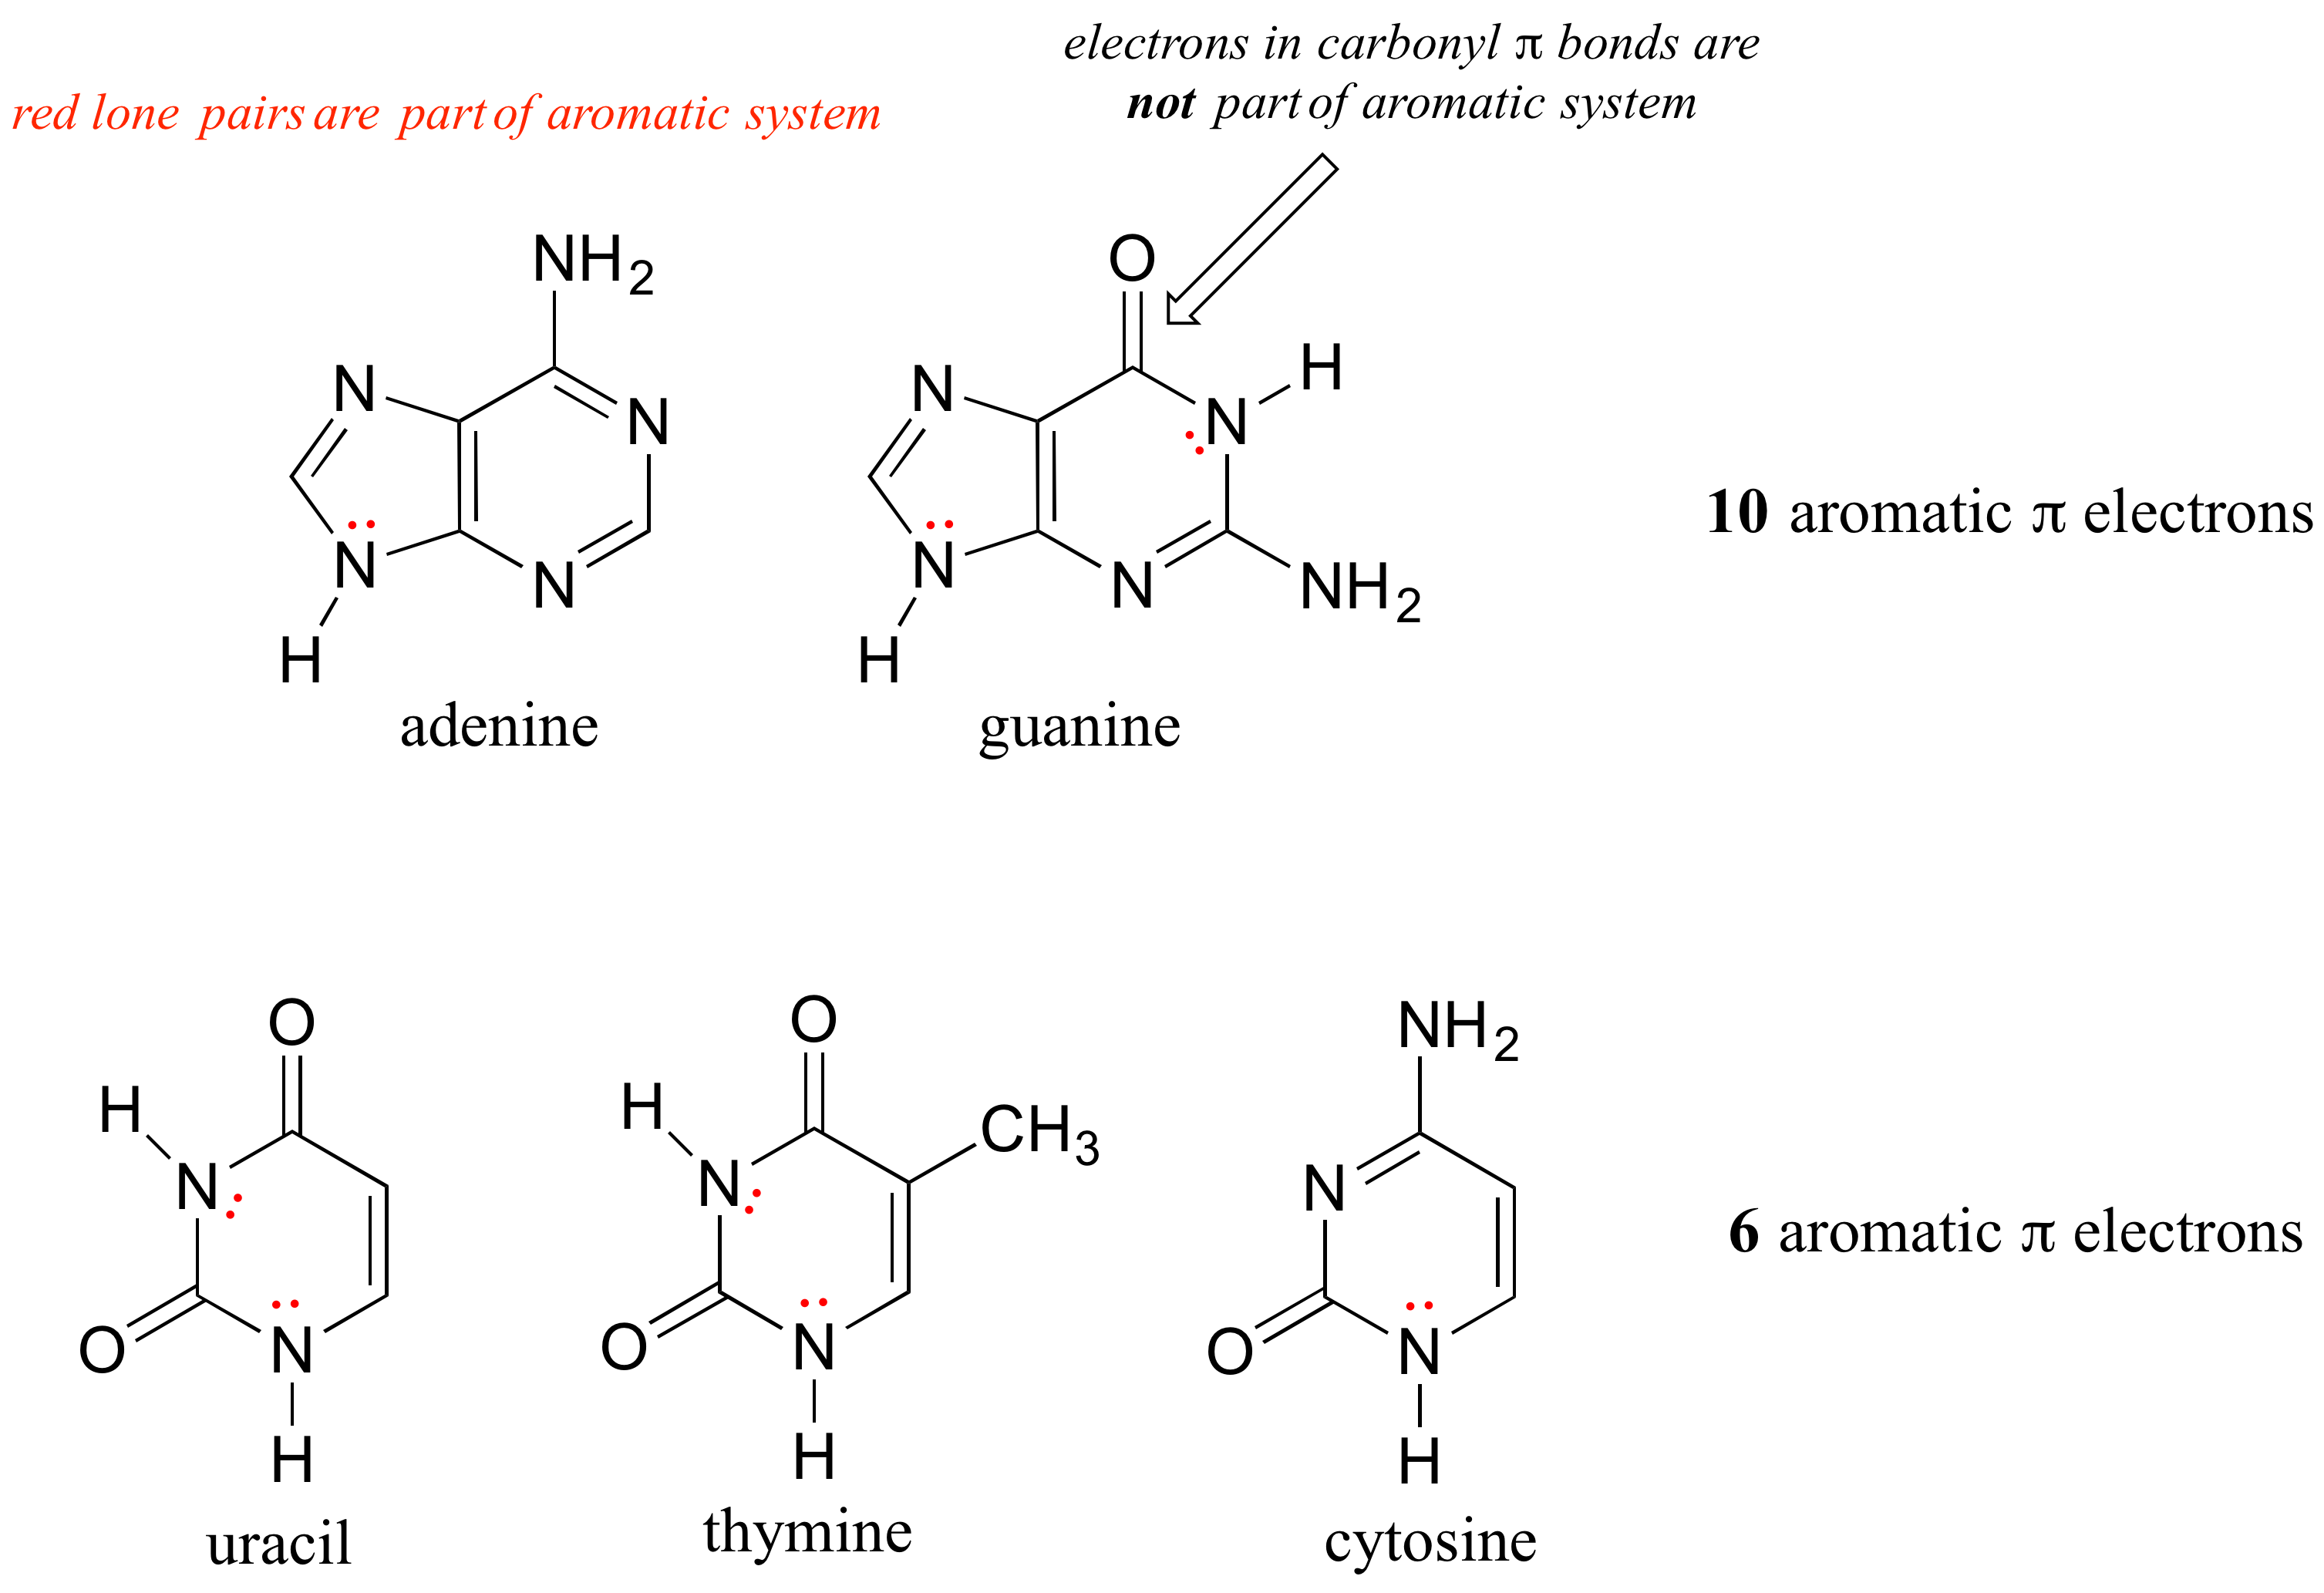 La adenina y la guanina tienen 10 electrones pi aromáticos. El uracilo, la timina y la citosina tienen seis electrones pi aromáticos. Los electrones en los enlaces carbonilo pi no forman parte del sistema aromático.